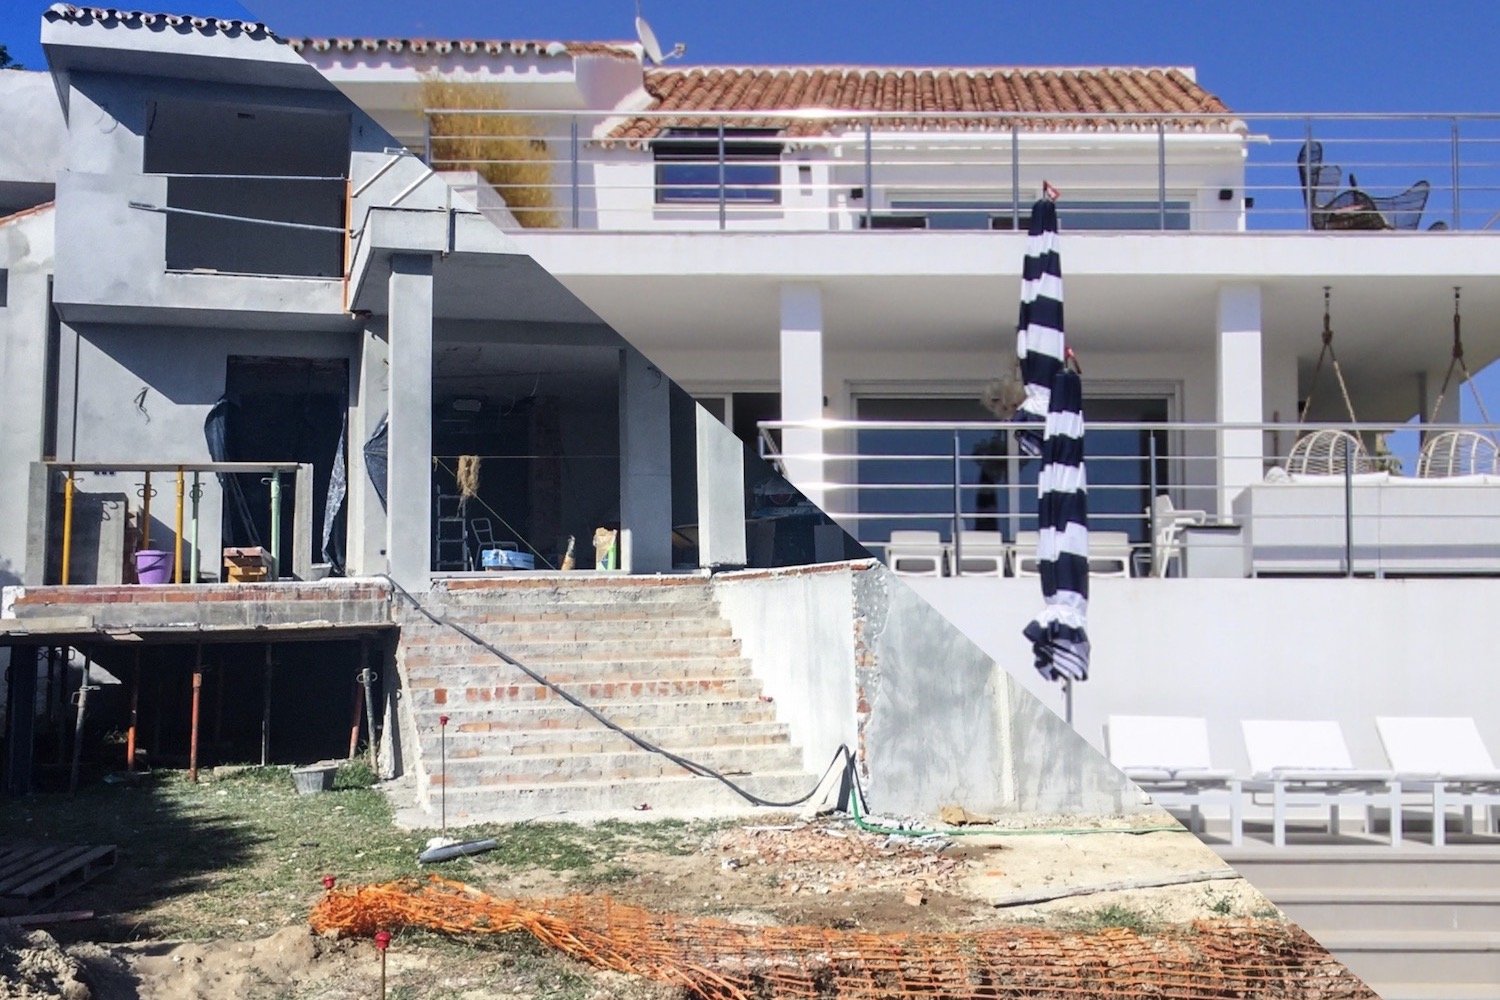 Property Development in Spain